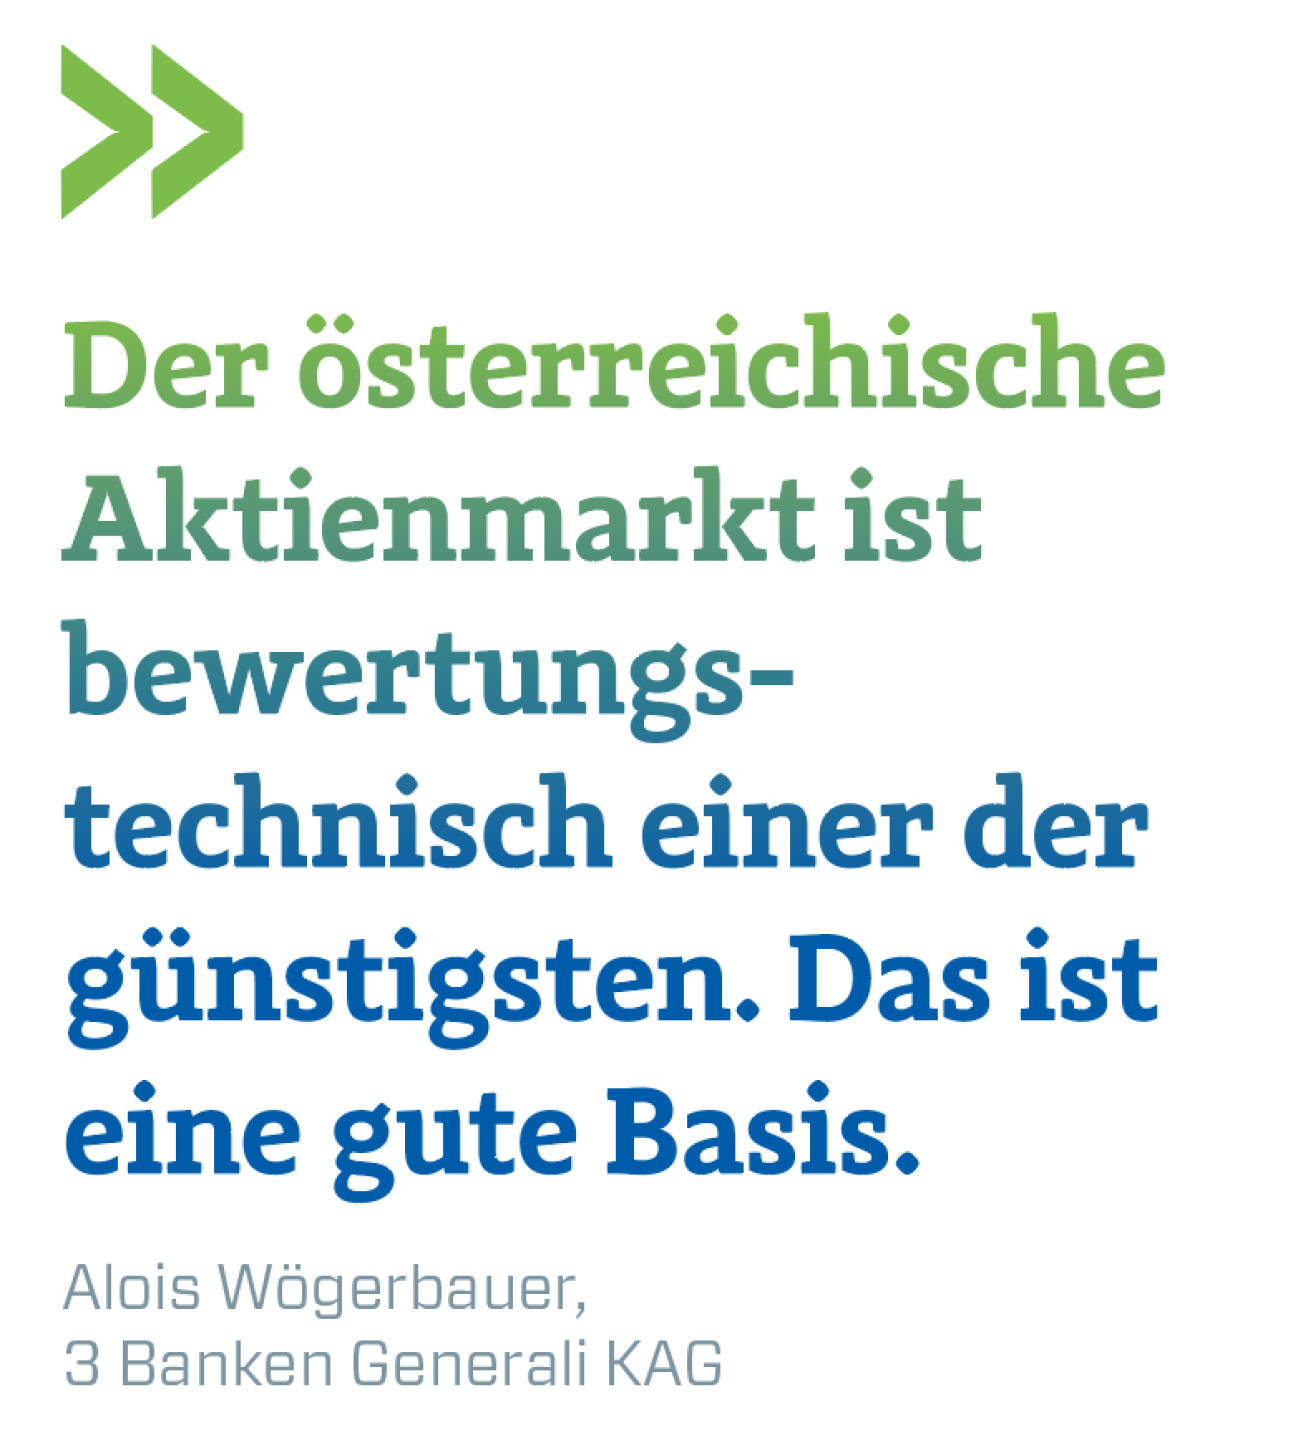 Der österreichische Aktienmarkt ist bewertungstechnisch einer der günstigsten. Das ist eine gute Basis.
Alois Wögerbauer, 3 Banken Generali KAG  